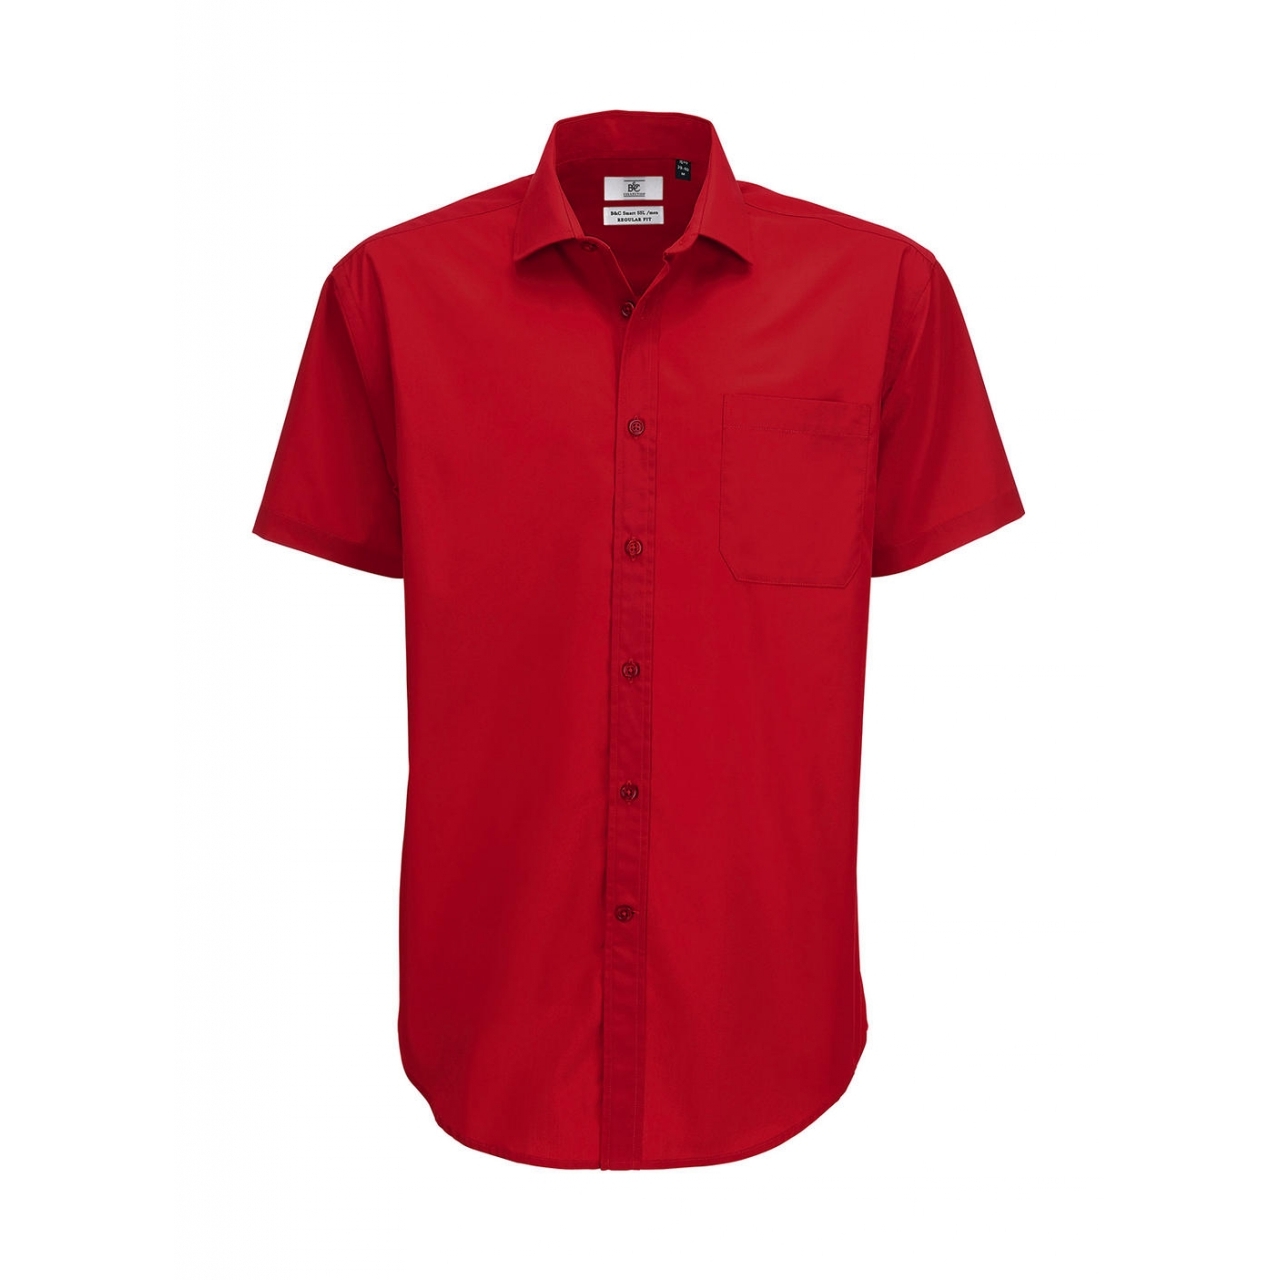 Košile pánská B&C Smart s krátkým rukávem - červená, L